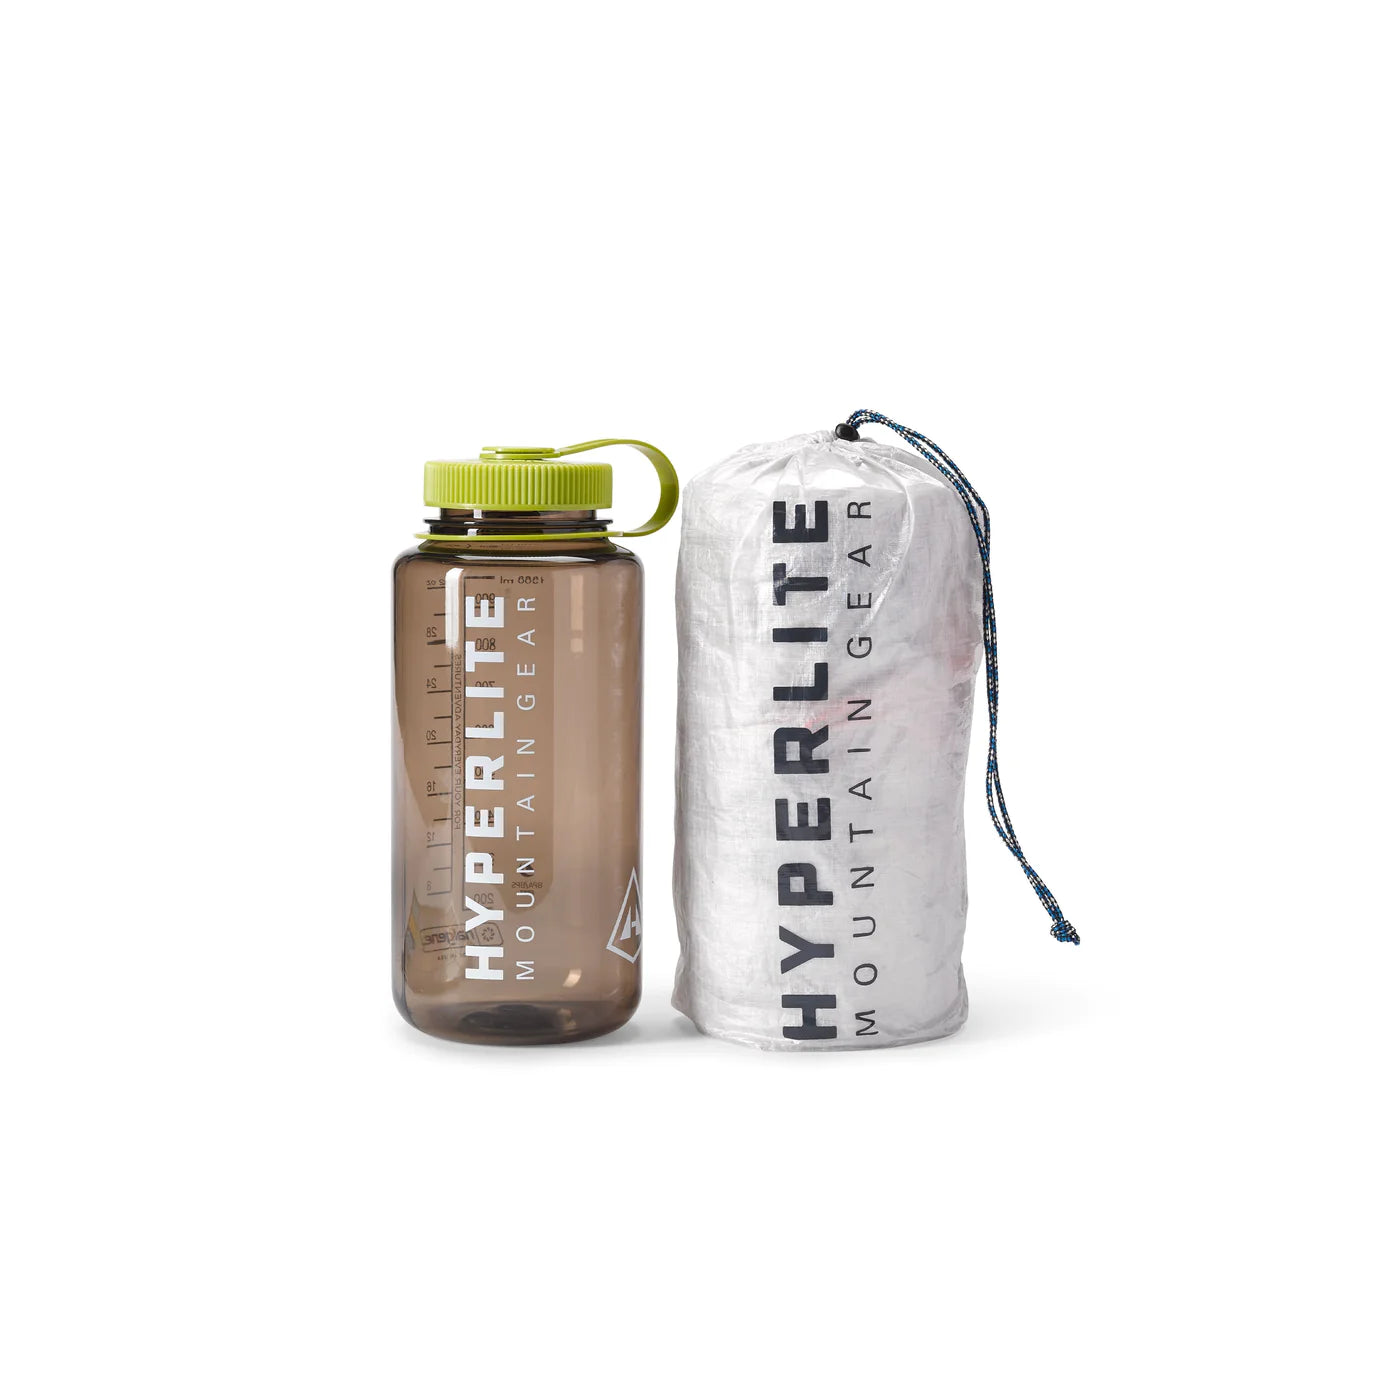 Hyperlite Mountain Gear 20 oz Water Bottle Holder